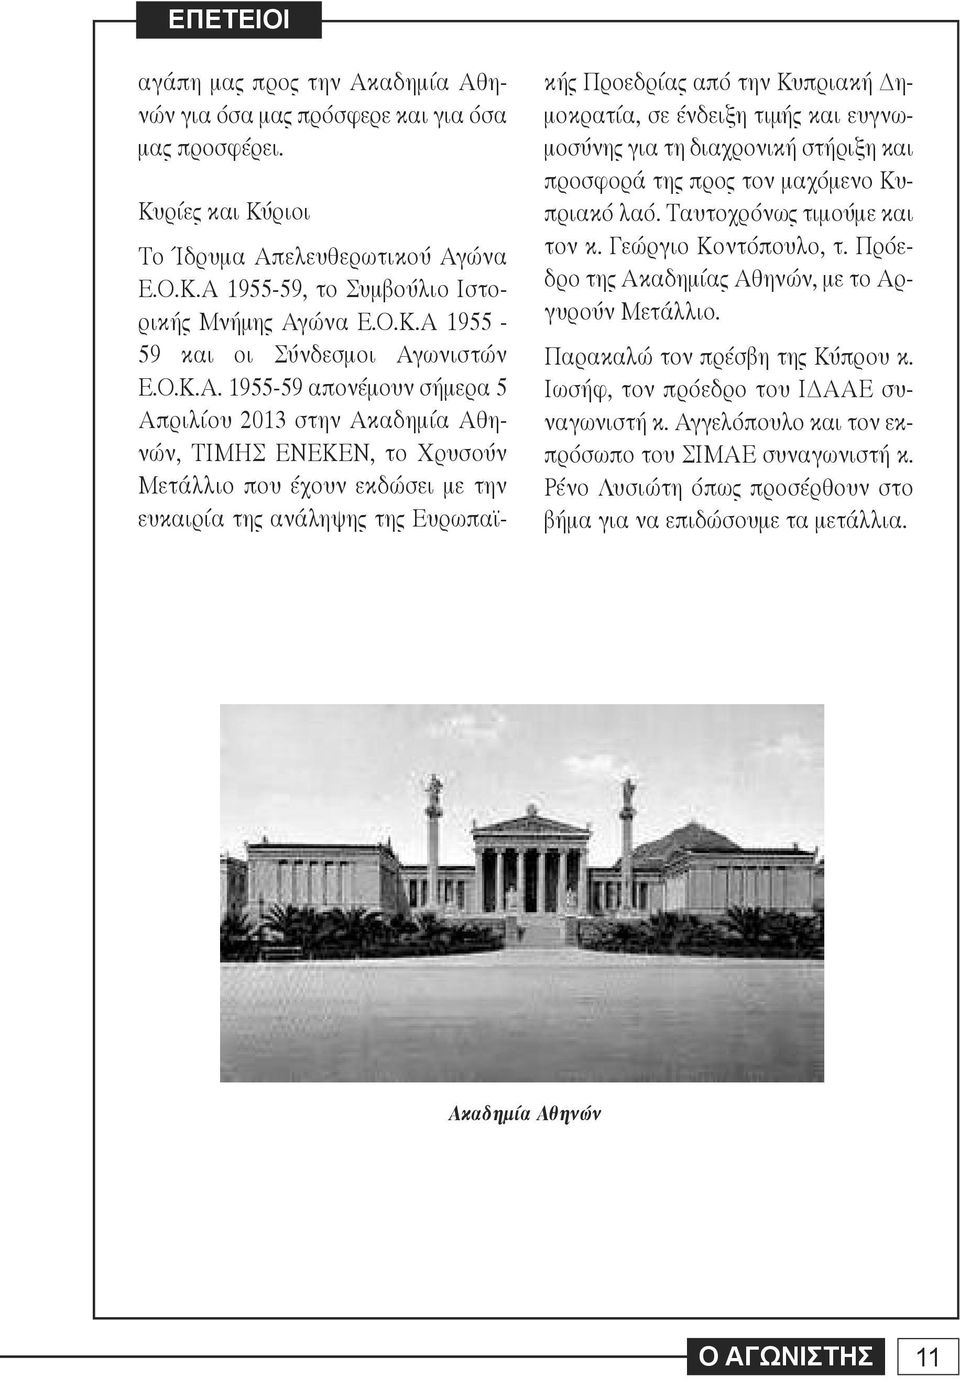 1955-59 απονέμουν σήμερα 5 Απριλίου 2013 στην Ακαδημία Αθηνών, ΤΙΜΗΣ ΕΝΕΚΕΝ, το Χρυσούν Μετάλλιο που έχουν εκδώσει με την ευκαιρία της ανάληψης της Ευρωπαϊκής Προεδρίας από την Κυπριακή Δημοκρατία,